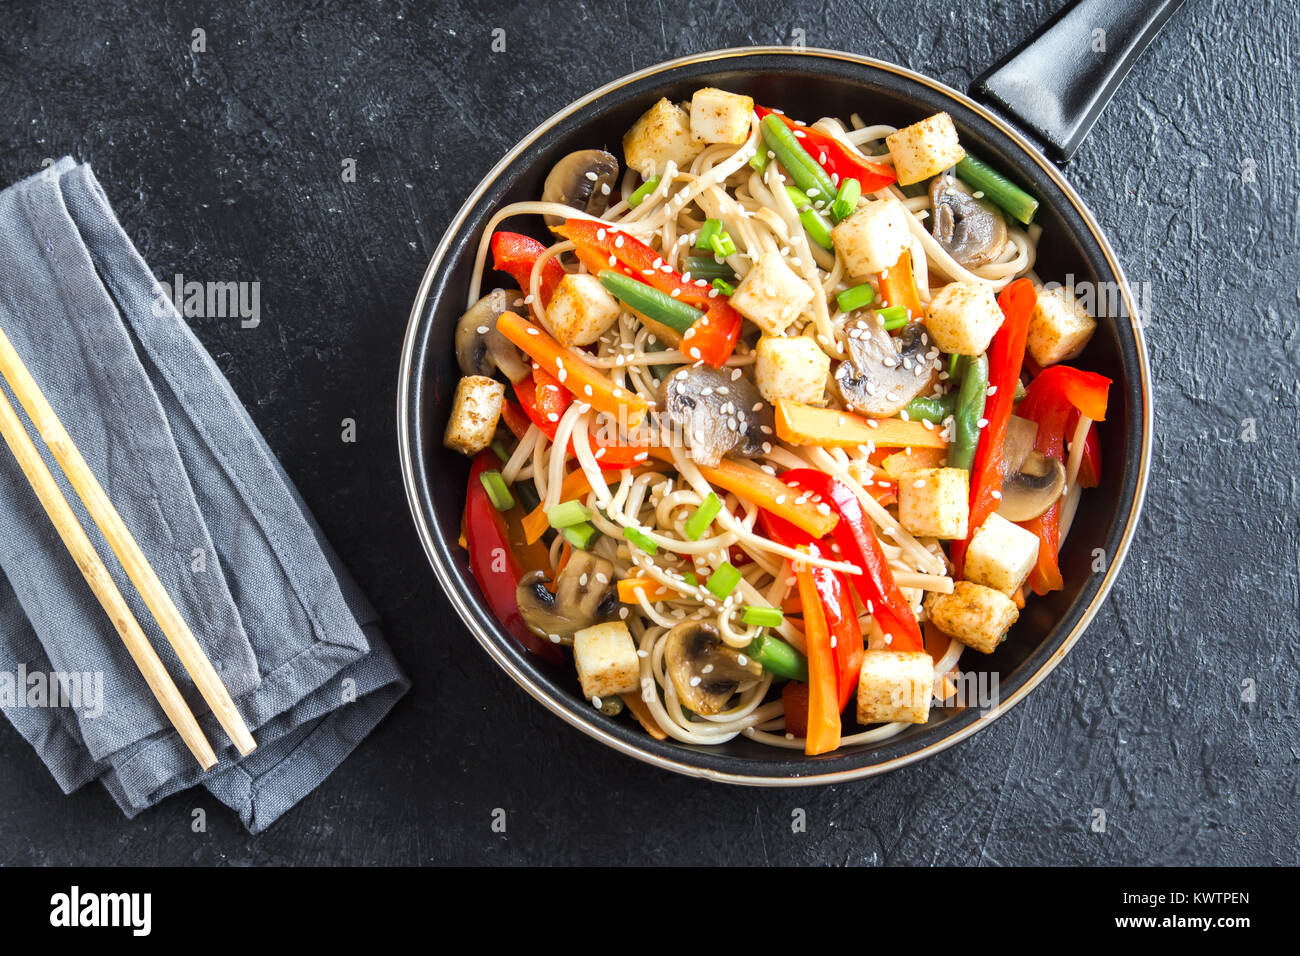 Faire revenir avec les nouilles Udon, tofu, champignons et légumes. La nourriture végétarienne, végétalienne asiatique, repas sautés au wok à fond noir, copiez l'espace. Banque D'Images